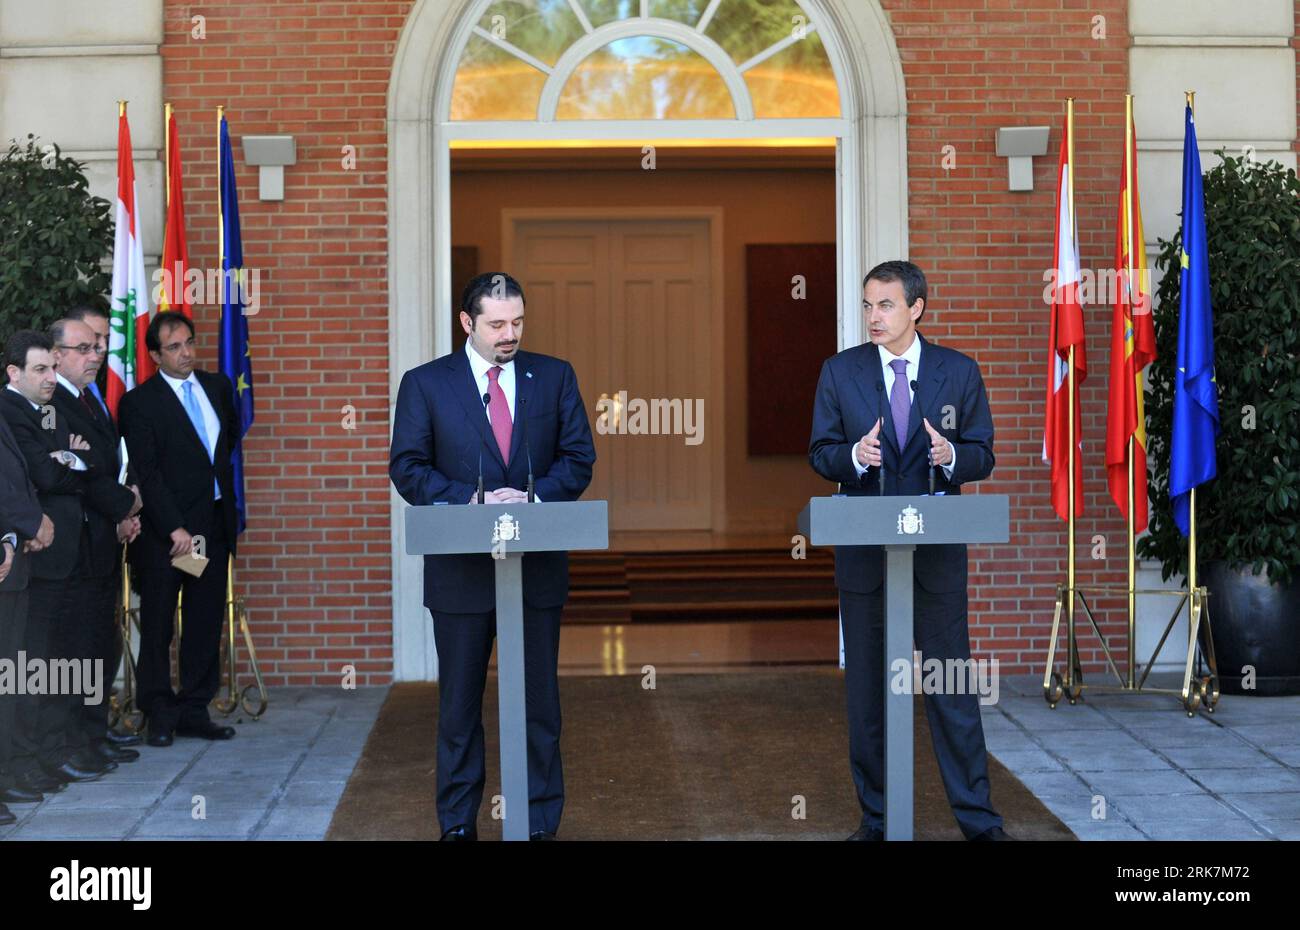 Bildnummer: 53927641 Datum: 08.04.2010 Copyright: imago/Xinhua der spanische Premierminister Jose Luis Rodriguez Zapatero (R) und der libanesische Premierminister Saad al-Hariri halten nach ihrem Treffen in Madrid, Spanien, am 8. April 2010 eine gemeinsame Pressekonferenz ab. Es war Saad al-Hariris erste Reise nach Spanien. (Xinhua/Chen Haitong) (lyx) (3)SPAIN-LEBANON-ZAPATERO-SAAD AL-HARIRI-MEETING PUBLICATIONxNOTxINxCHN People Politik premiumd xint kbdig xsp 2010 quer Bildnummer 53927641 Datum 08 04 2010 Copyright Imago XINHUA die spanischen Premierminister Jose Luis Rodriguez Zapatero Saad und die libanesischen Premierminister Stockfoto